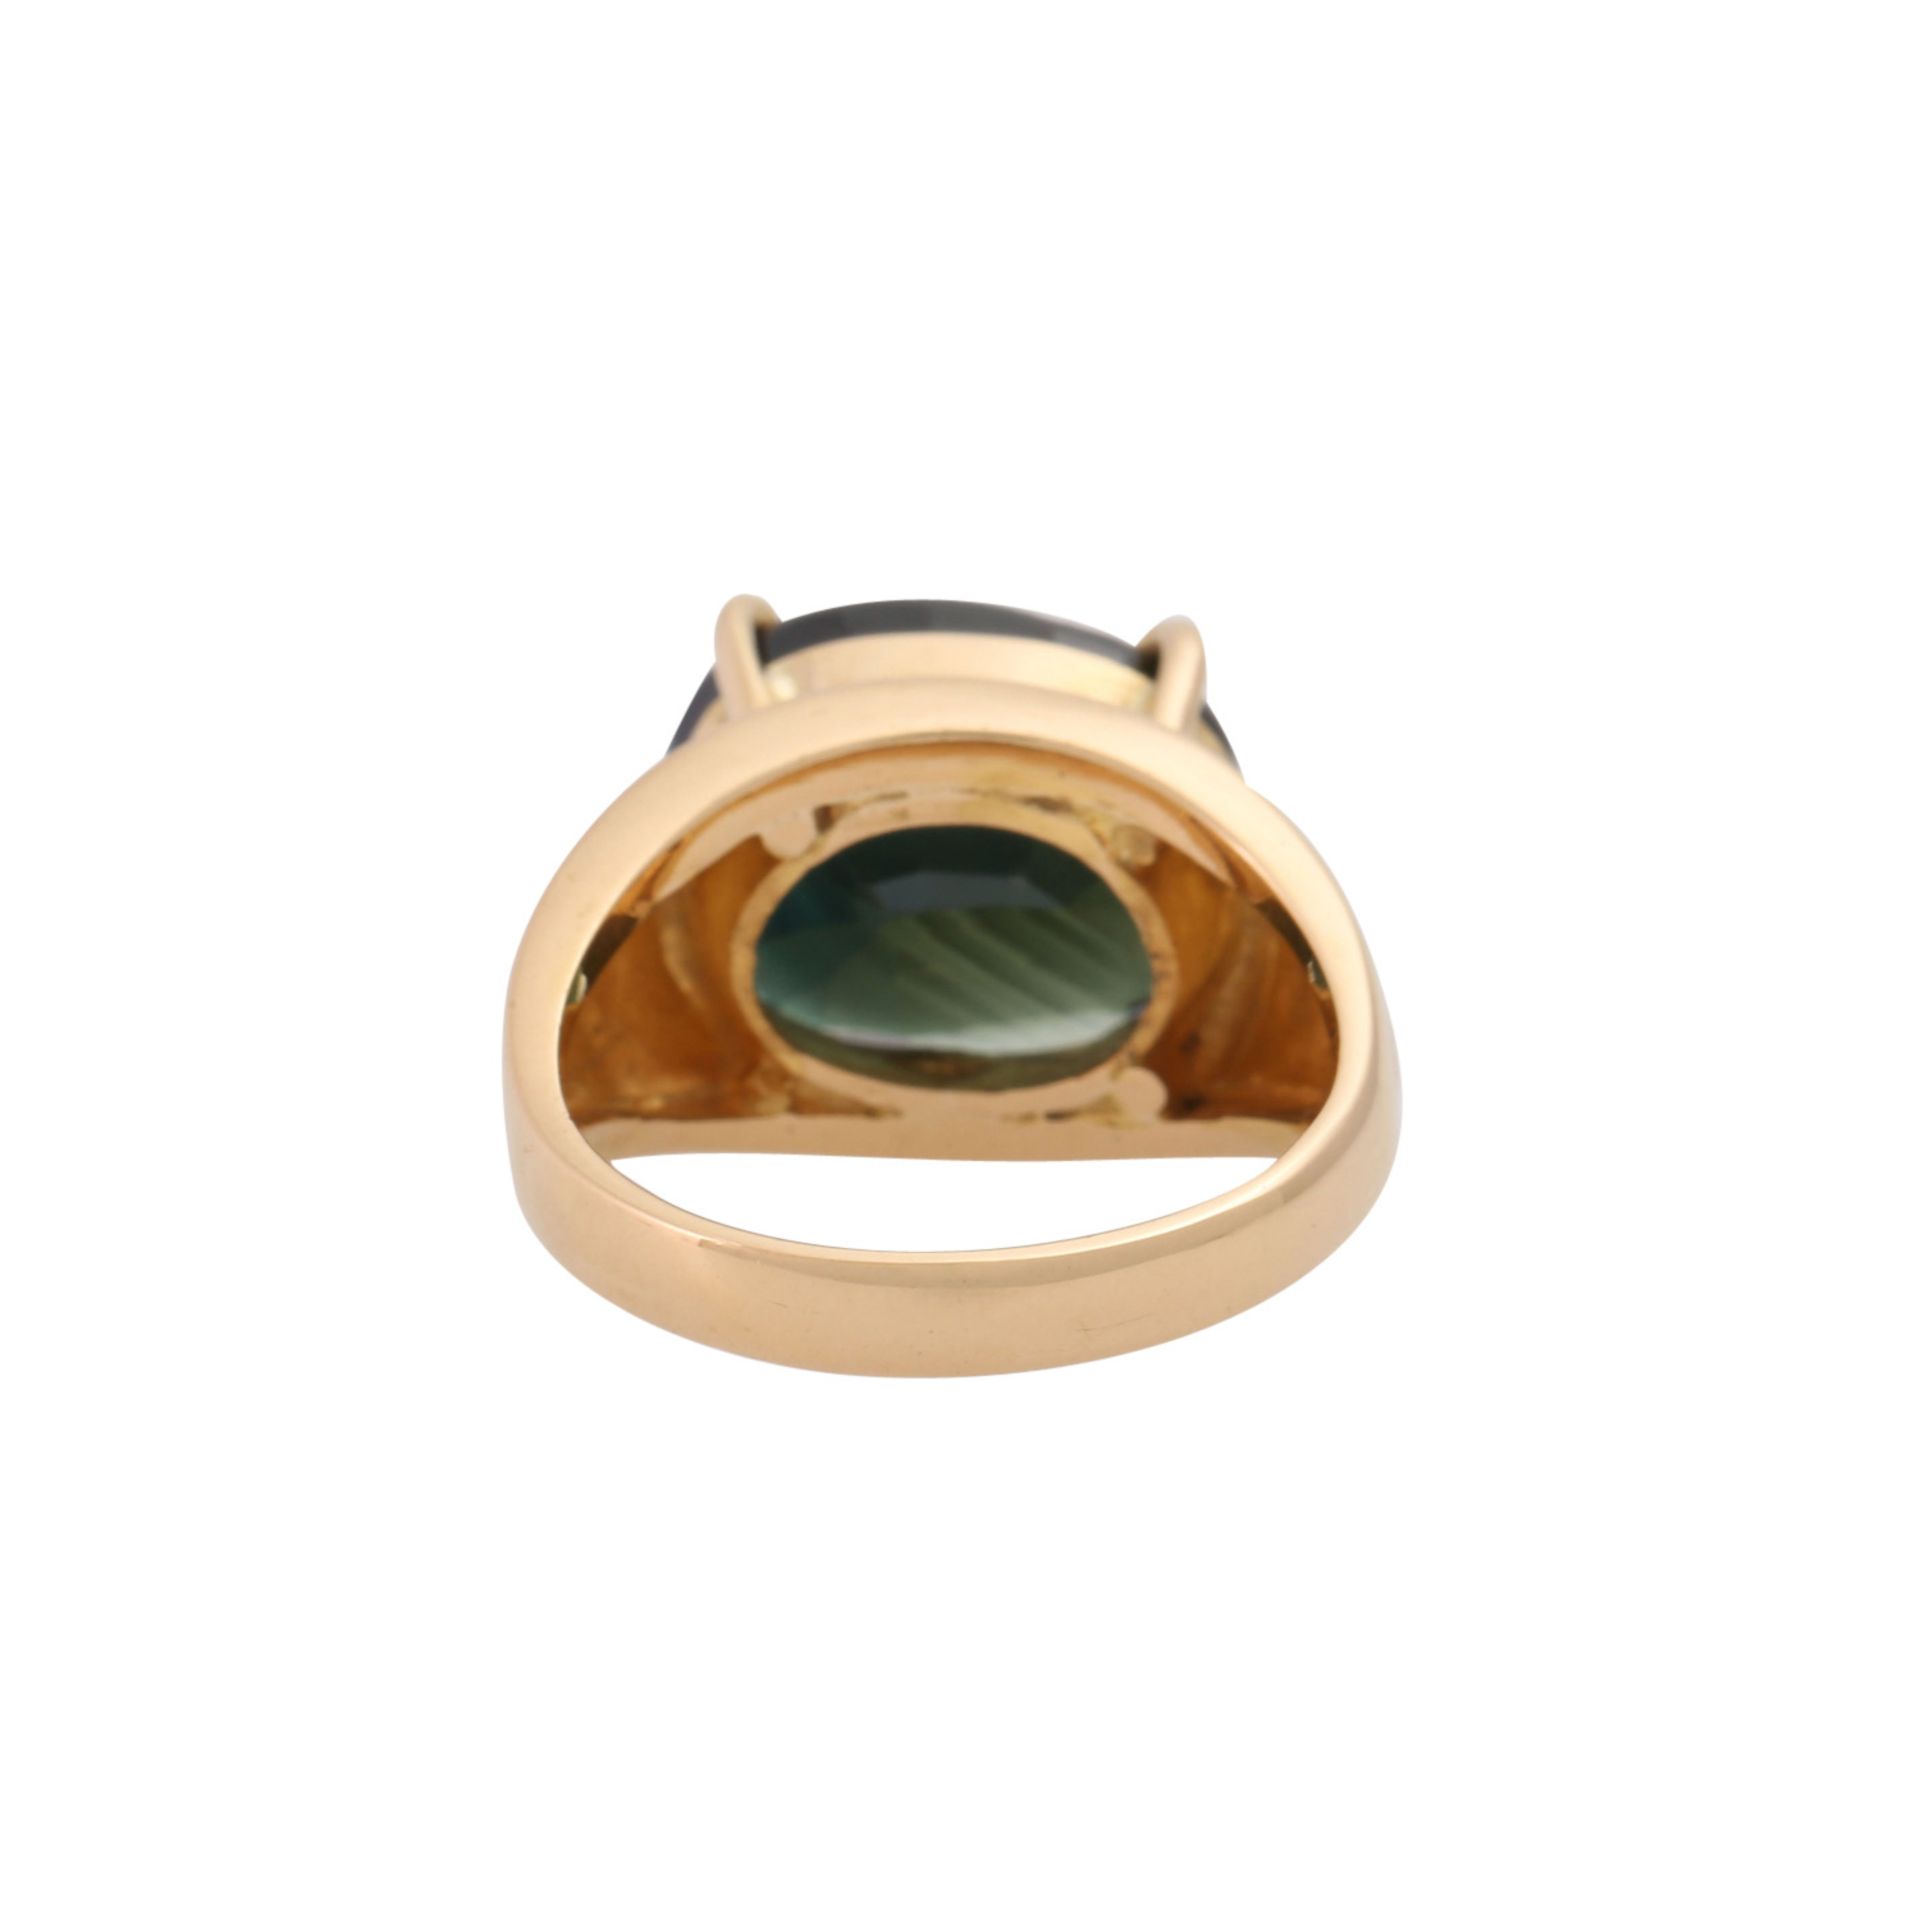 Ring mit großem grünen Saphir von 9 ct, - Image 4 of 5